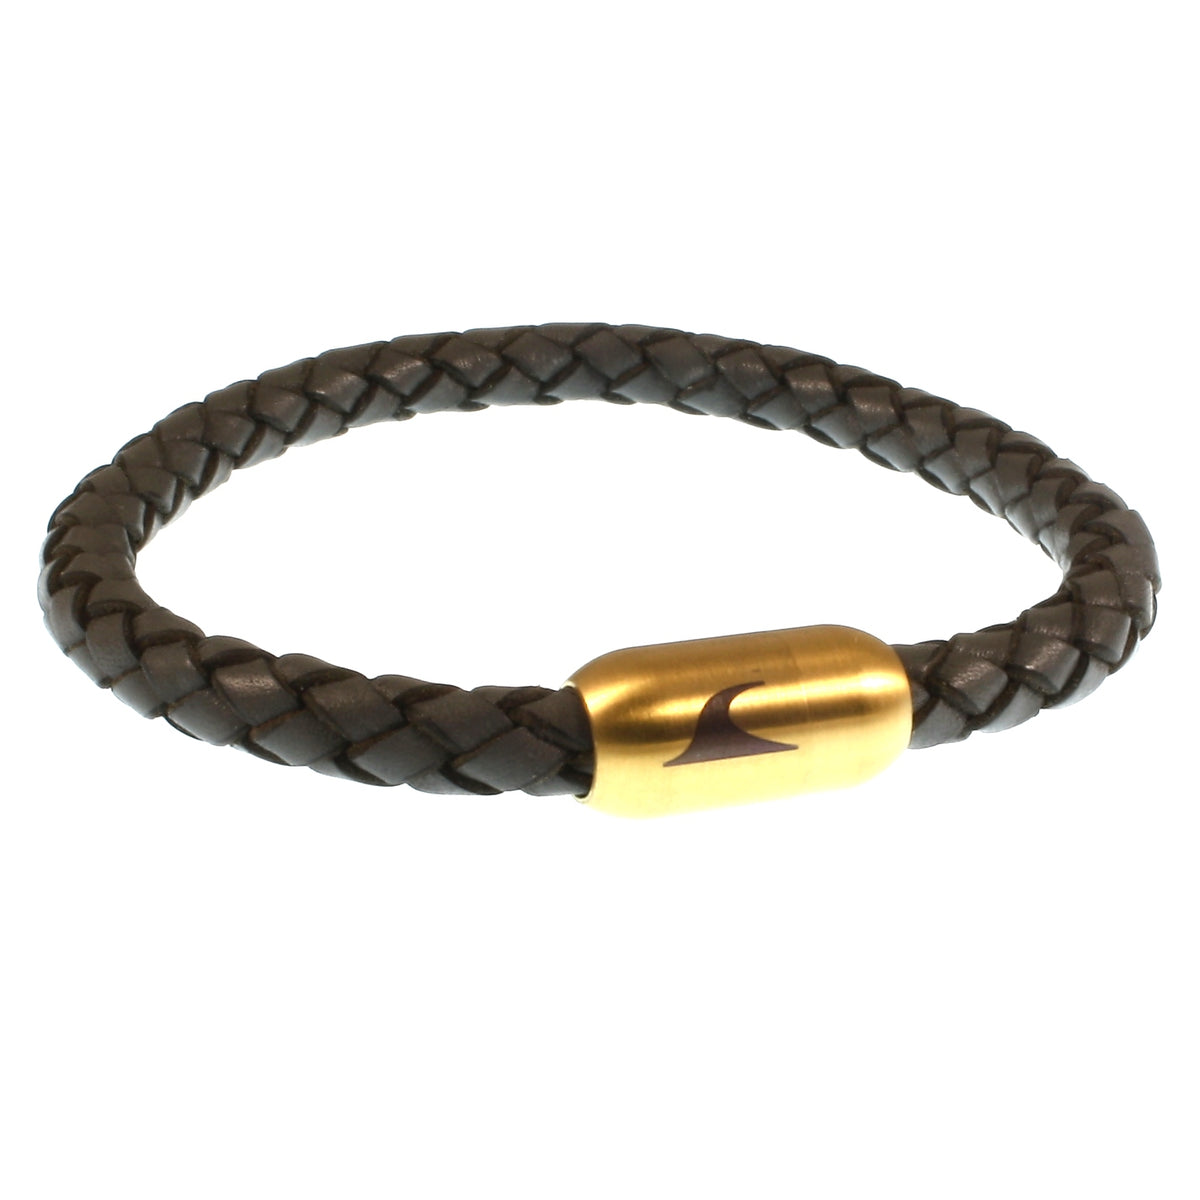 Herren-leder-armband-damen-sylt-dunkelgrau-anthrazit-gold-geflochten-Edelstahlverschluss-vorn-wavepirate-shop-f